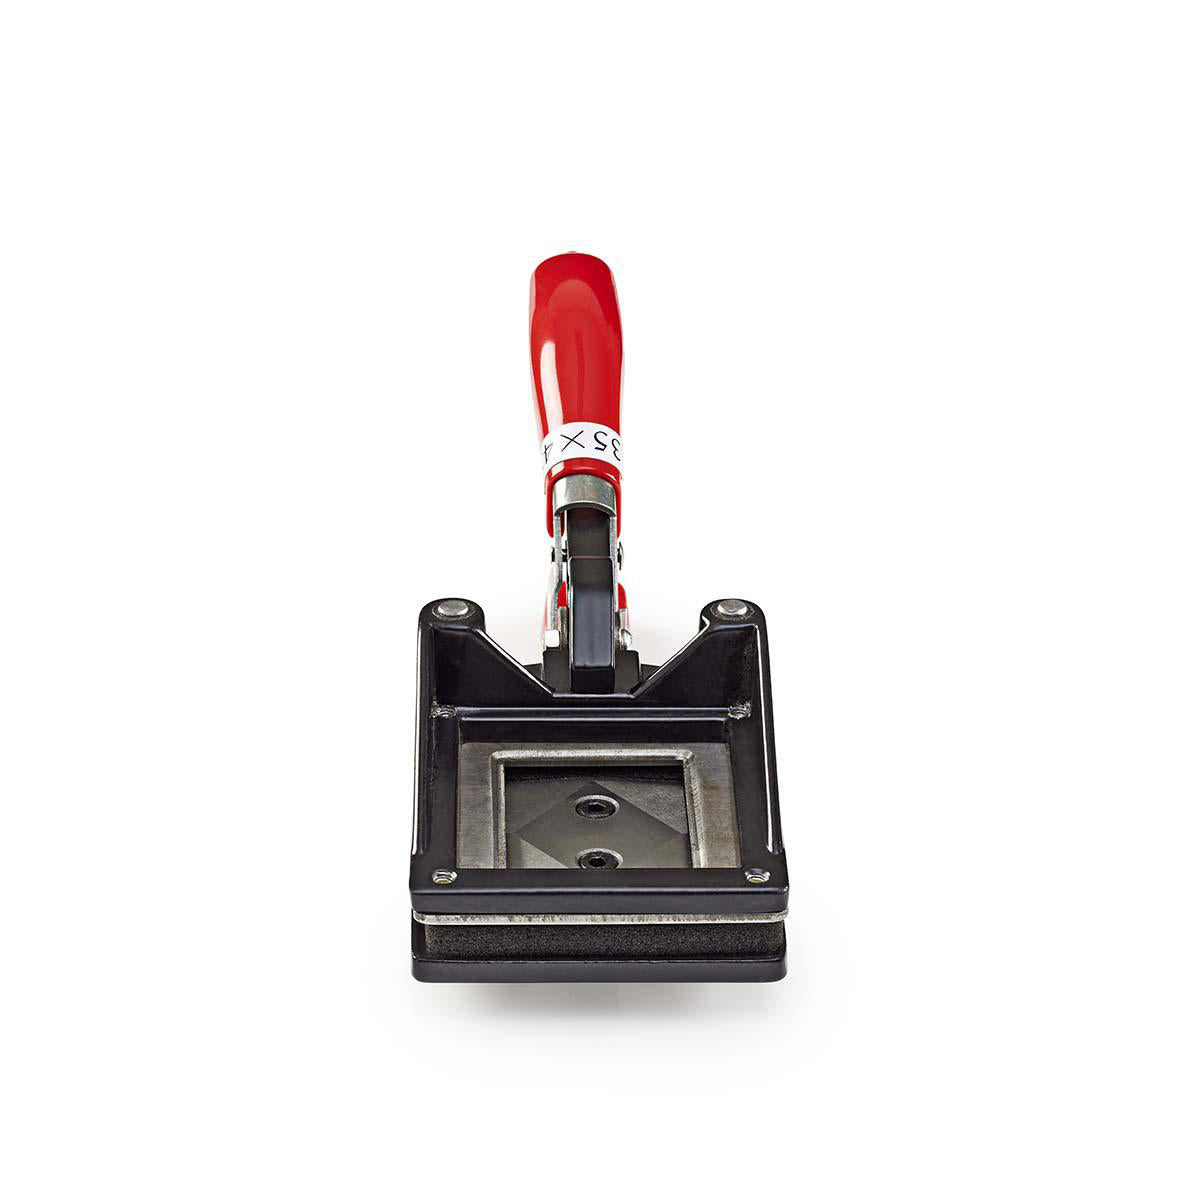 Passbild Schneidemaschine | 35 x 45 mm | Metall | Red / Schwarz